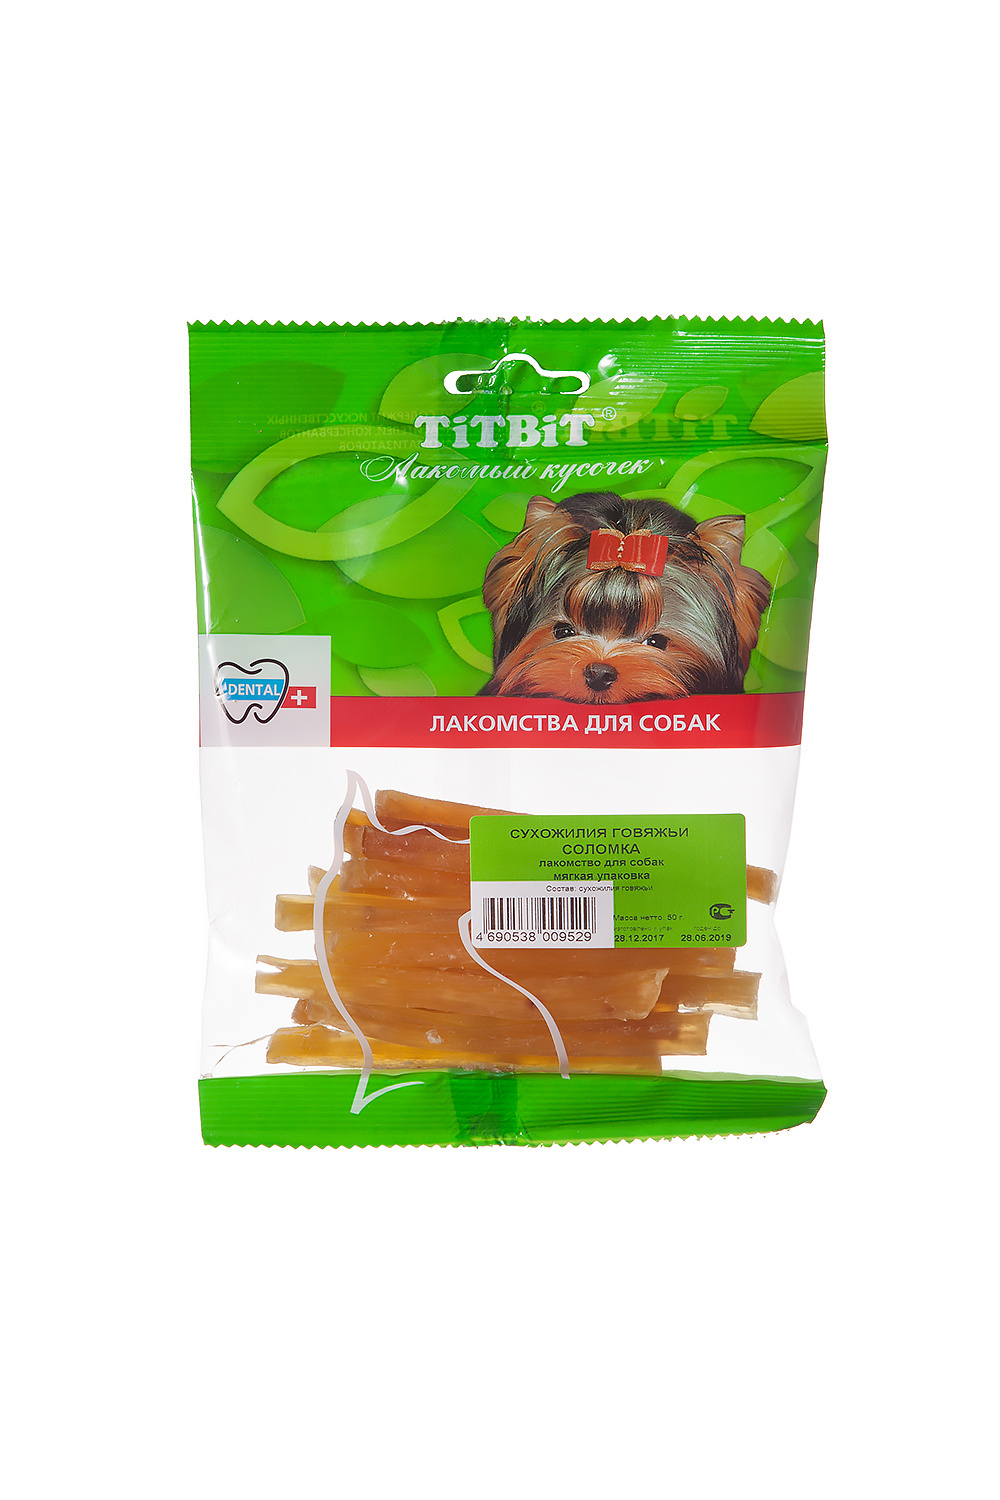 TiTBiT TiTBiT сухожилия говяжьи (соломка) - мягкая упаковка (50 г) titbit titbit сухожилия говяжьи соломка мягкая упаковка 50 г